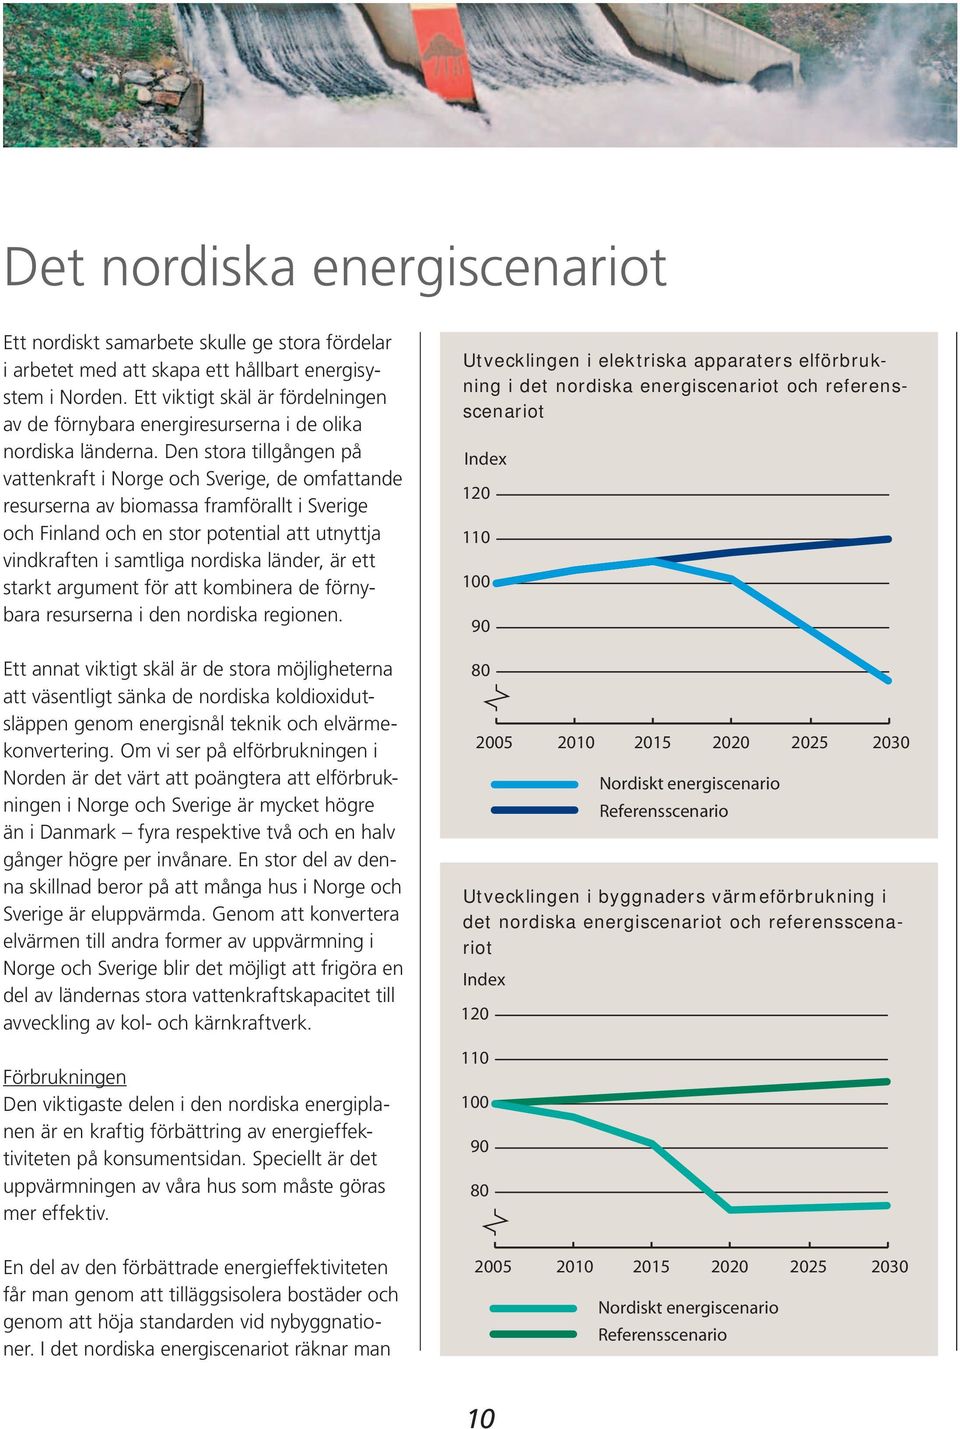 Den stora tillgången på vattenkraft i Norge och Sverige, de omfattande resurserna av biomassa framförallt i Sverige och Finland och en stor potential att utnyttja vindkraften i samtliga nordiska